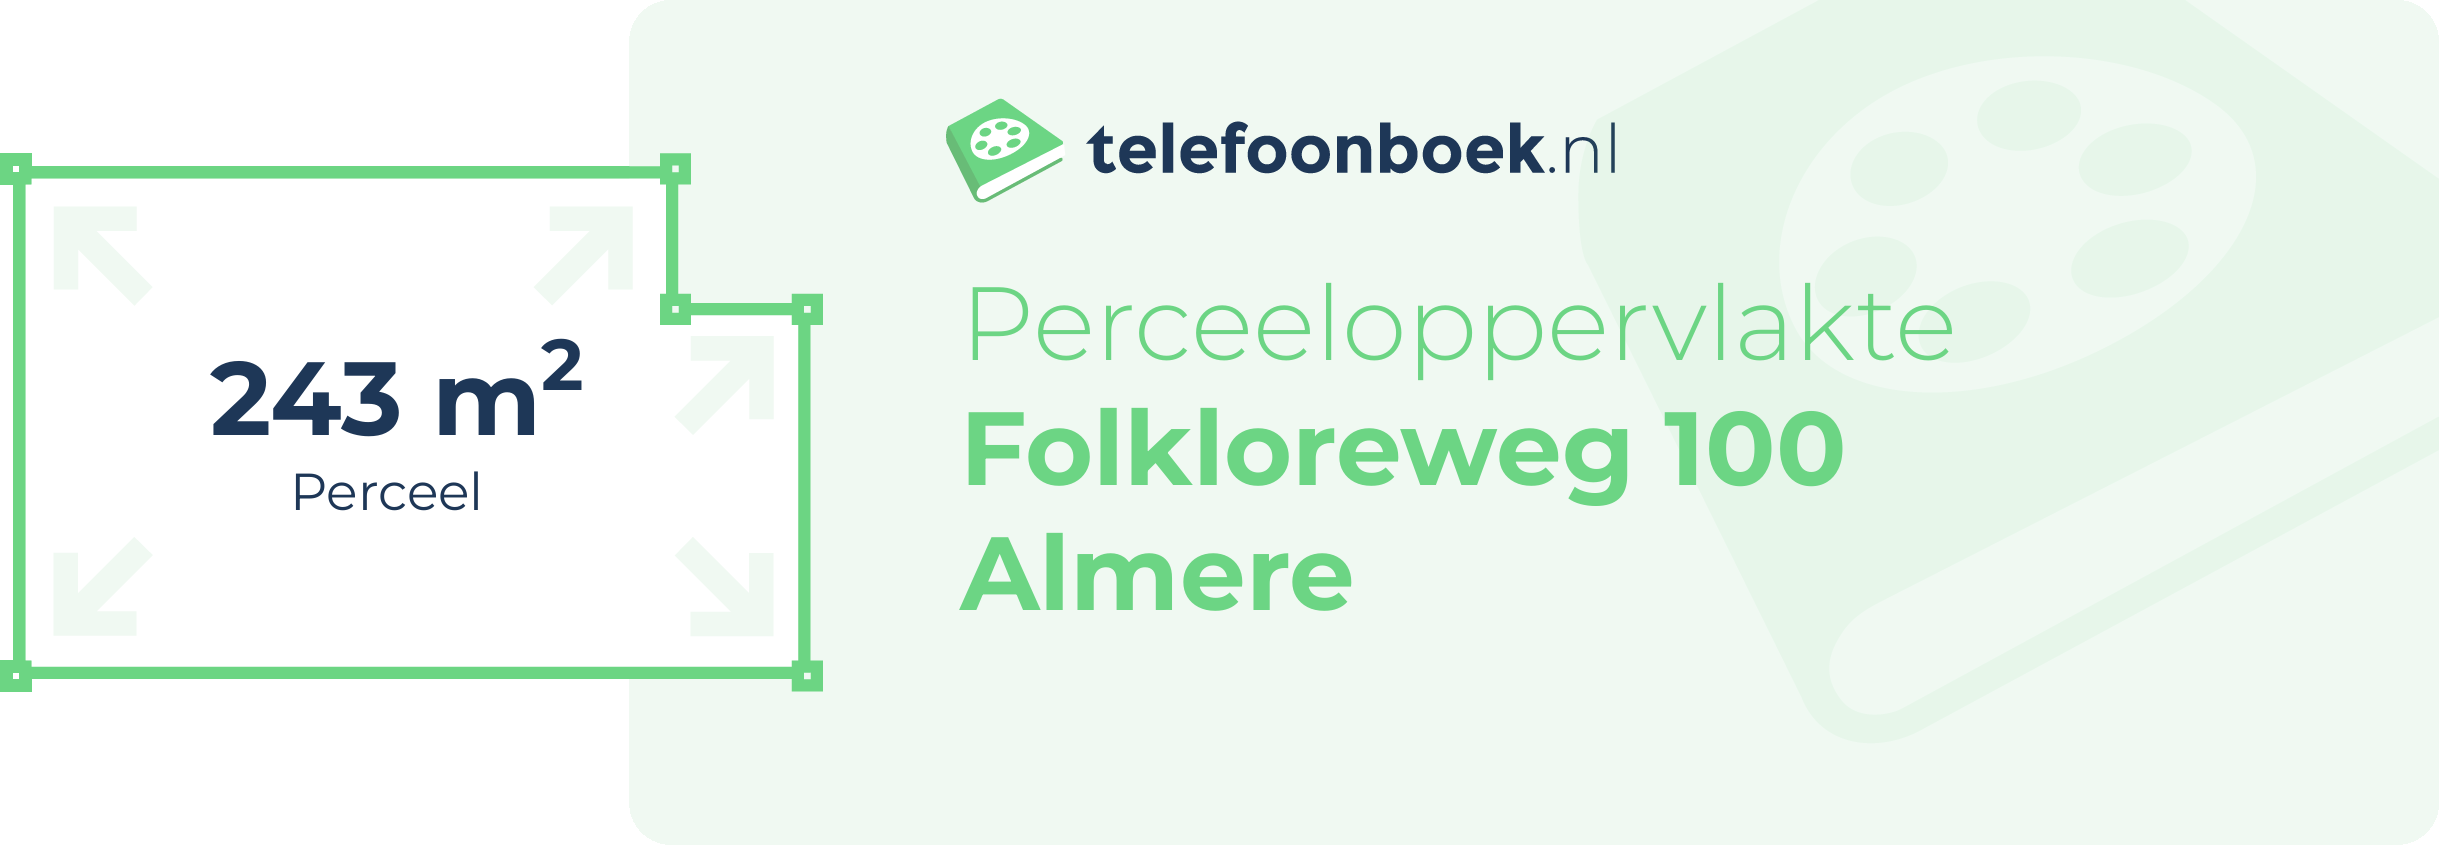 Perceeloppervlakte Folkloreweg 100 Almere